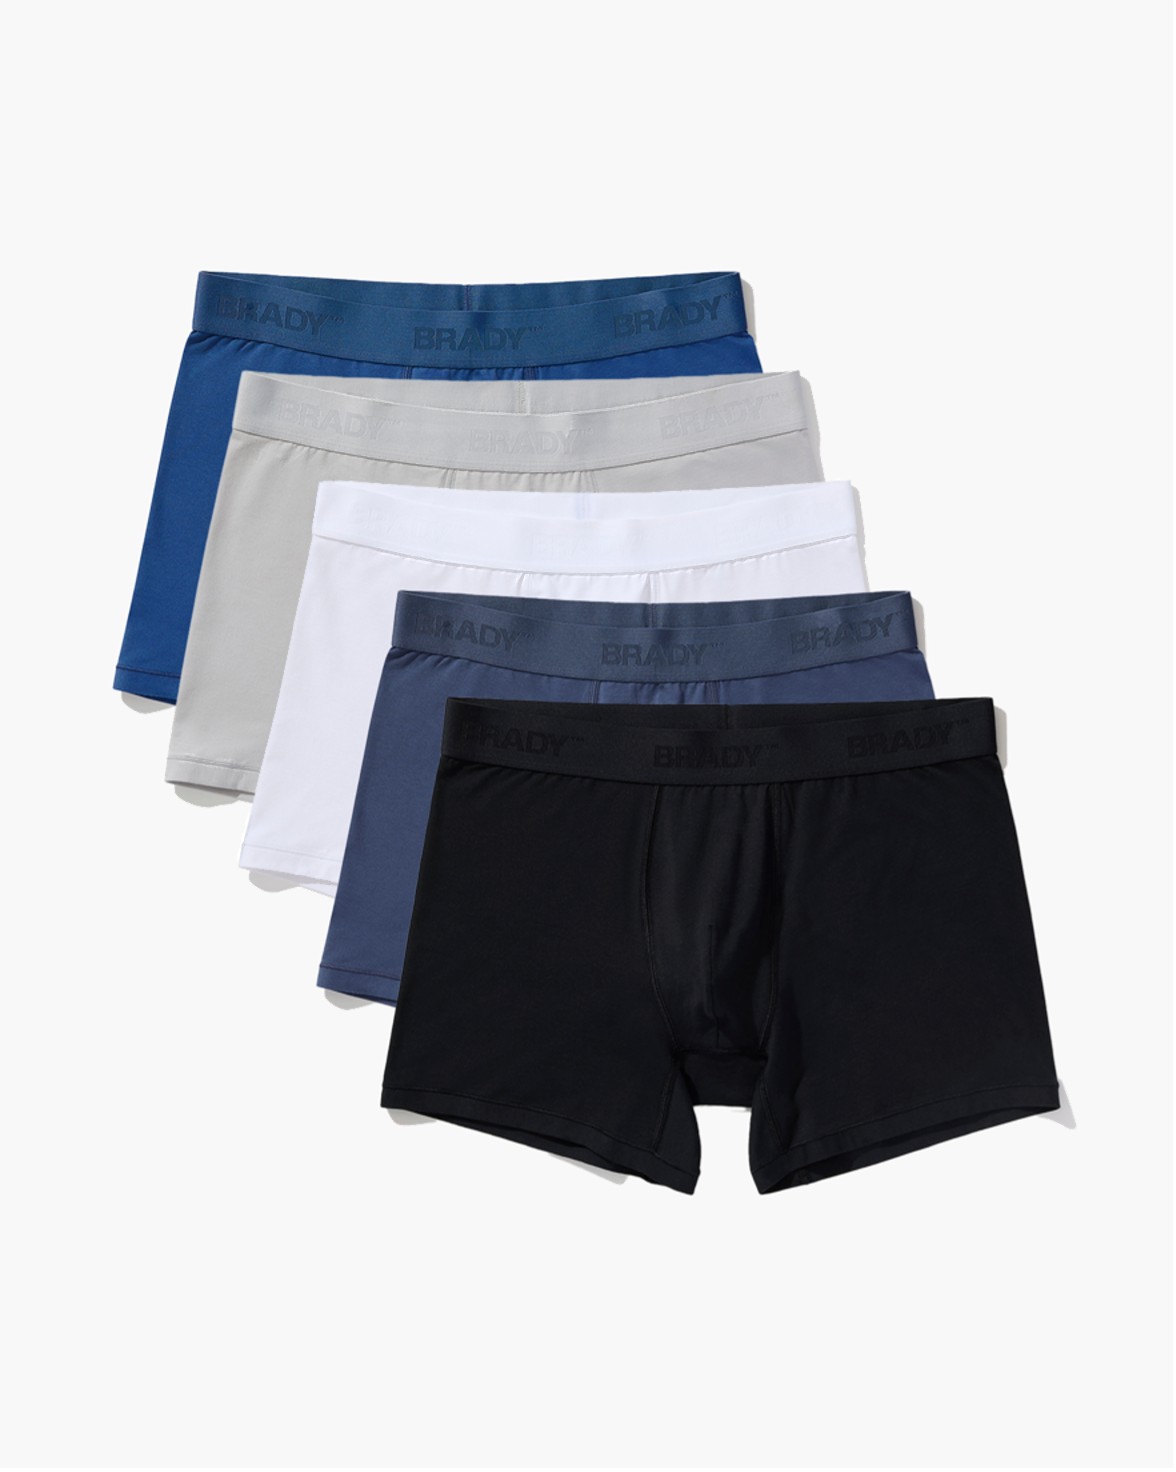 Brady Brand underwear, boxer brief five pack